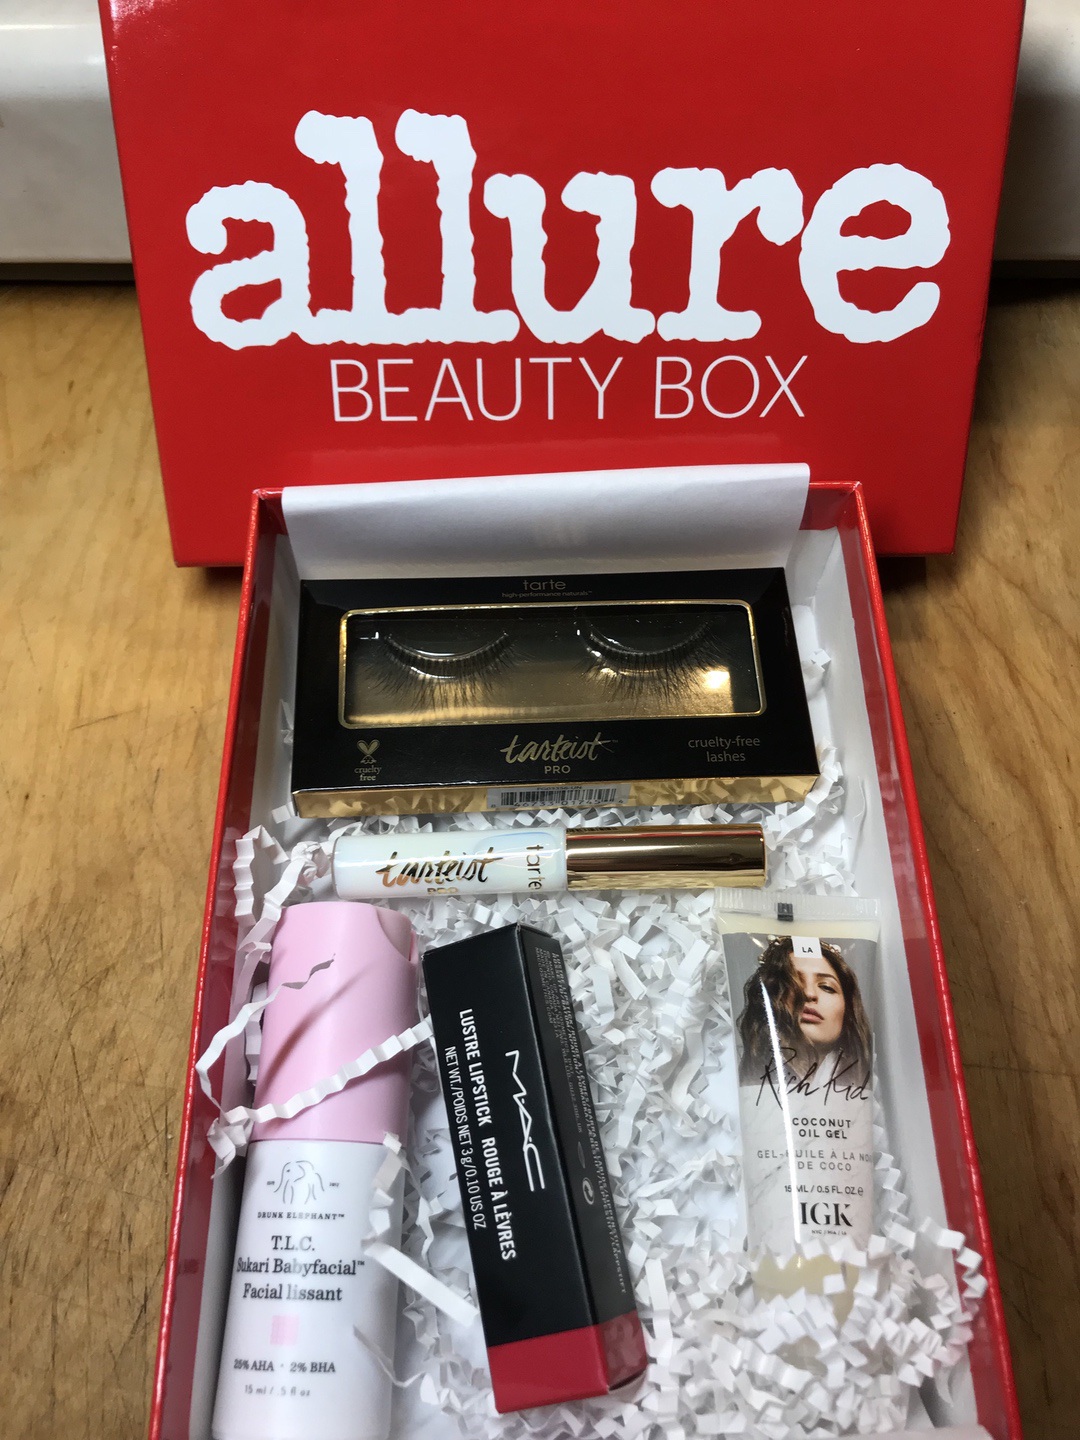 Allure Beauty Box September 2018 #allure #allurebeautybox #beautybox #beauty #makeup